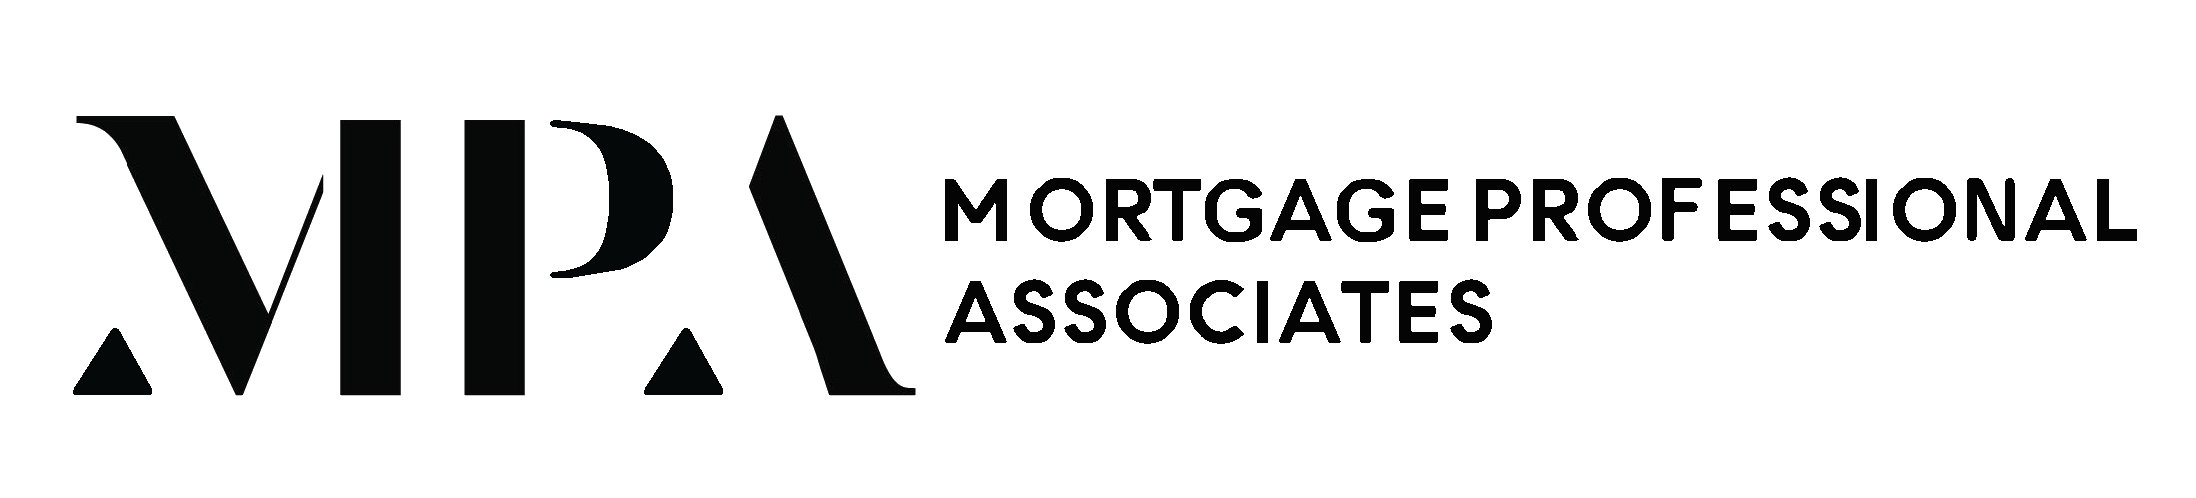 CBMP Ventures LLC dba Mortgage Professional Associates